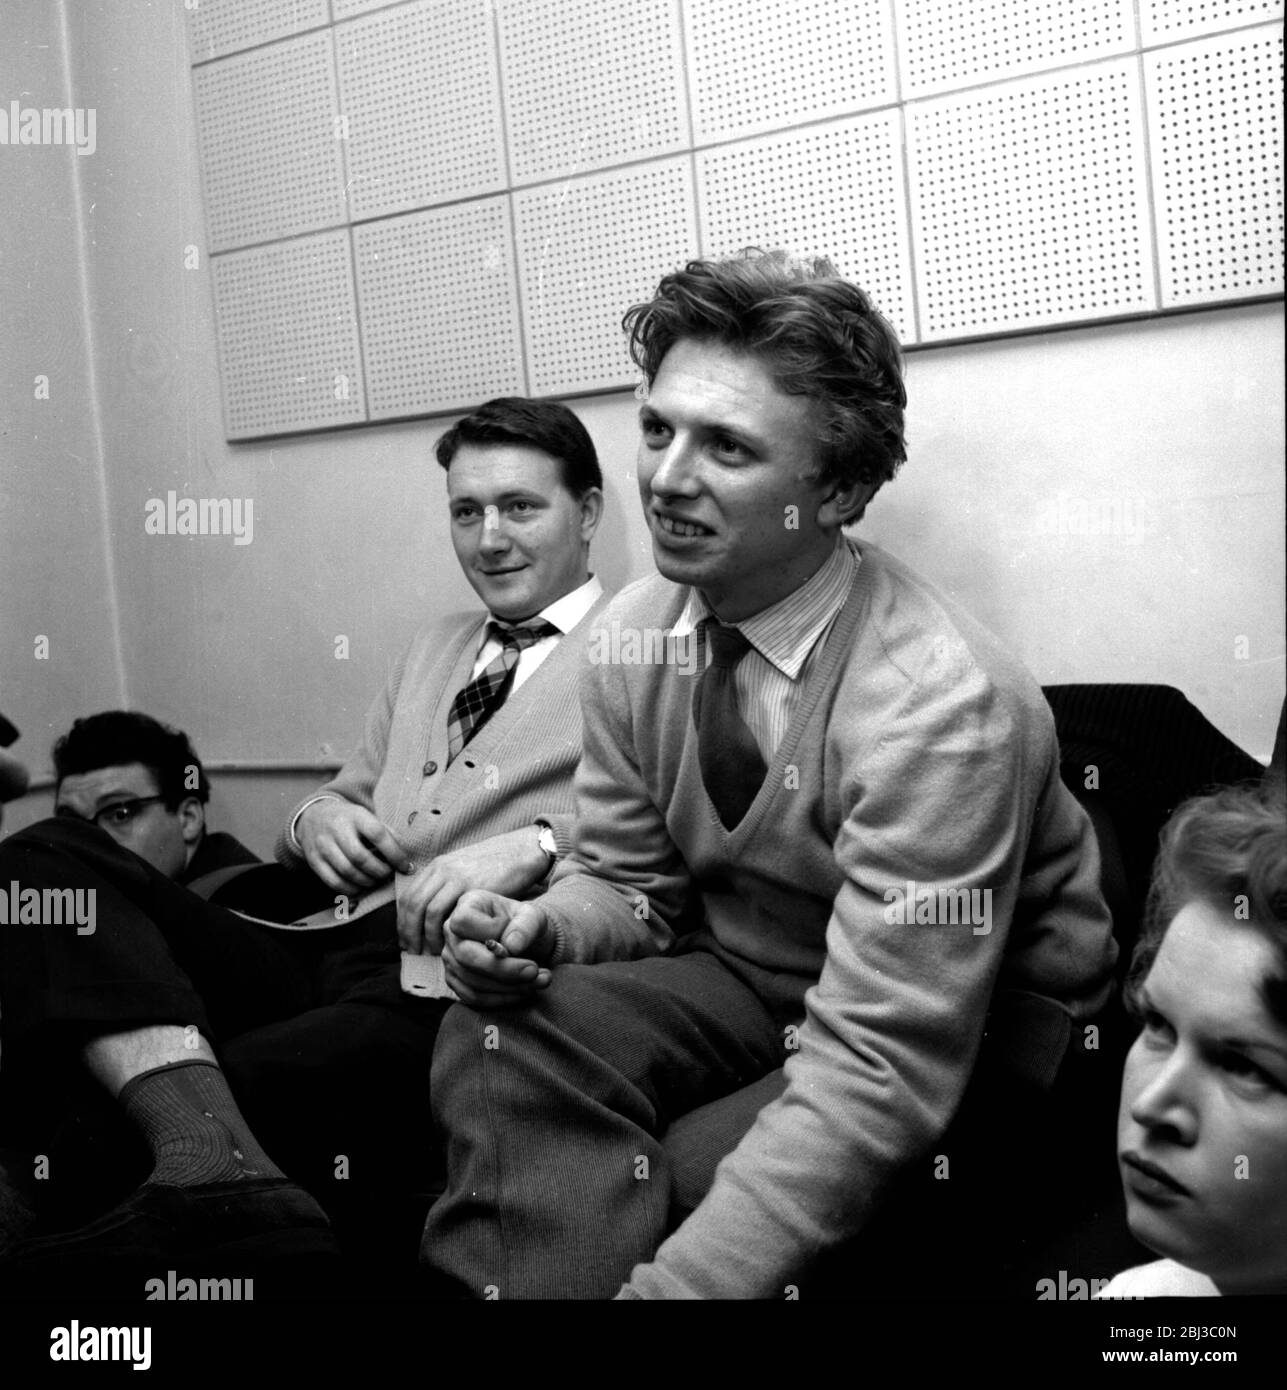 Tommy Stele si trova in uno studio di registrazione accanto a John Kennedy che lo scoprì. Preso negli anni '50. Foto Stock